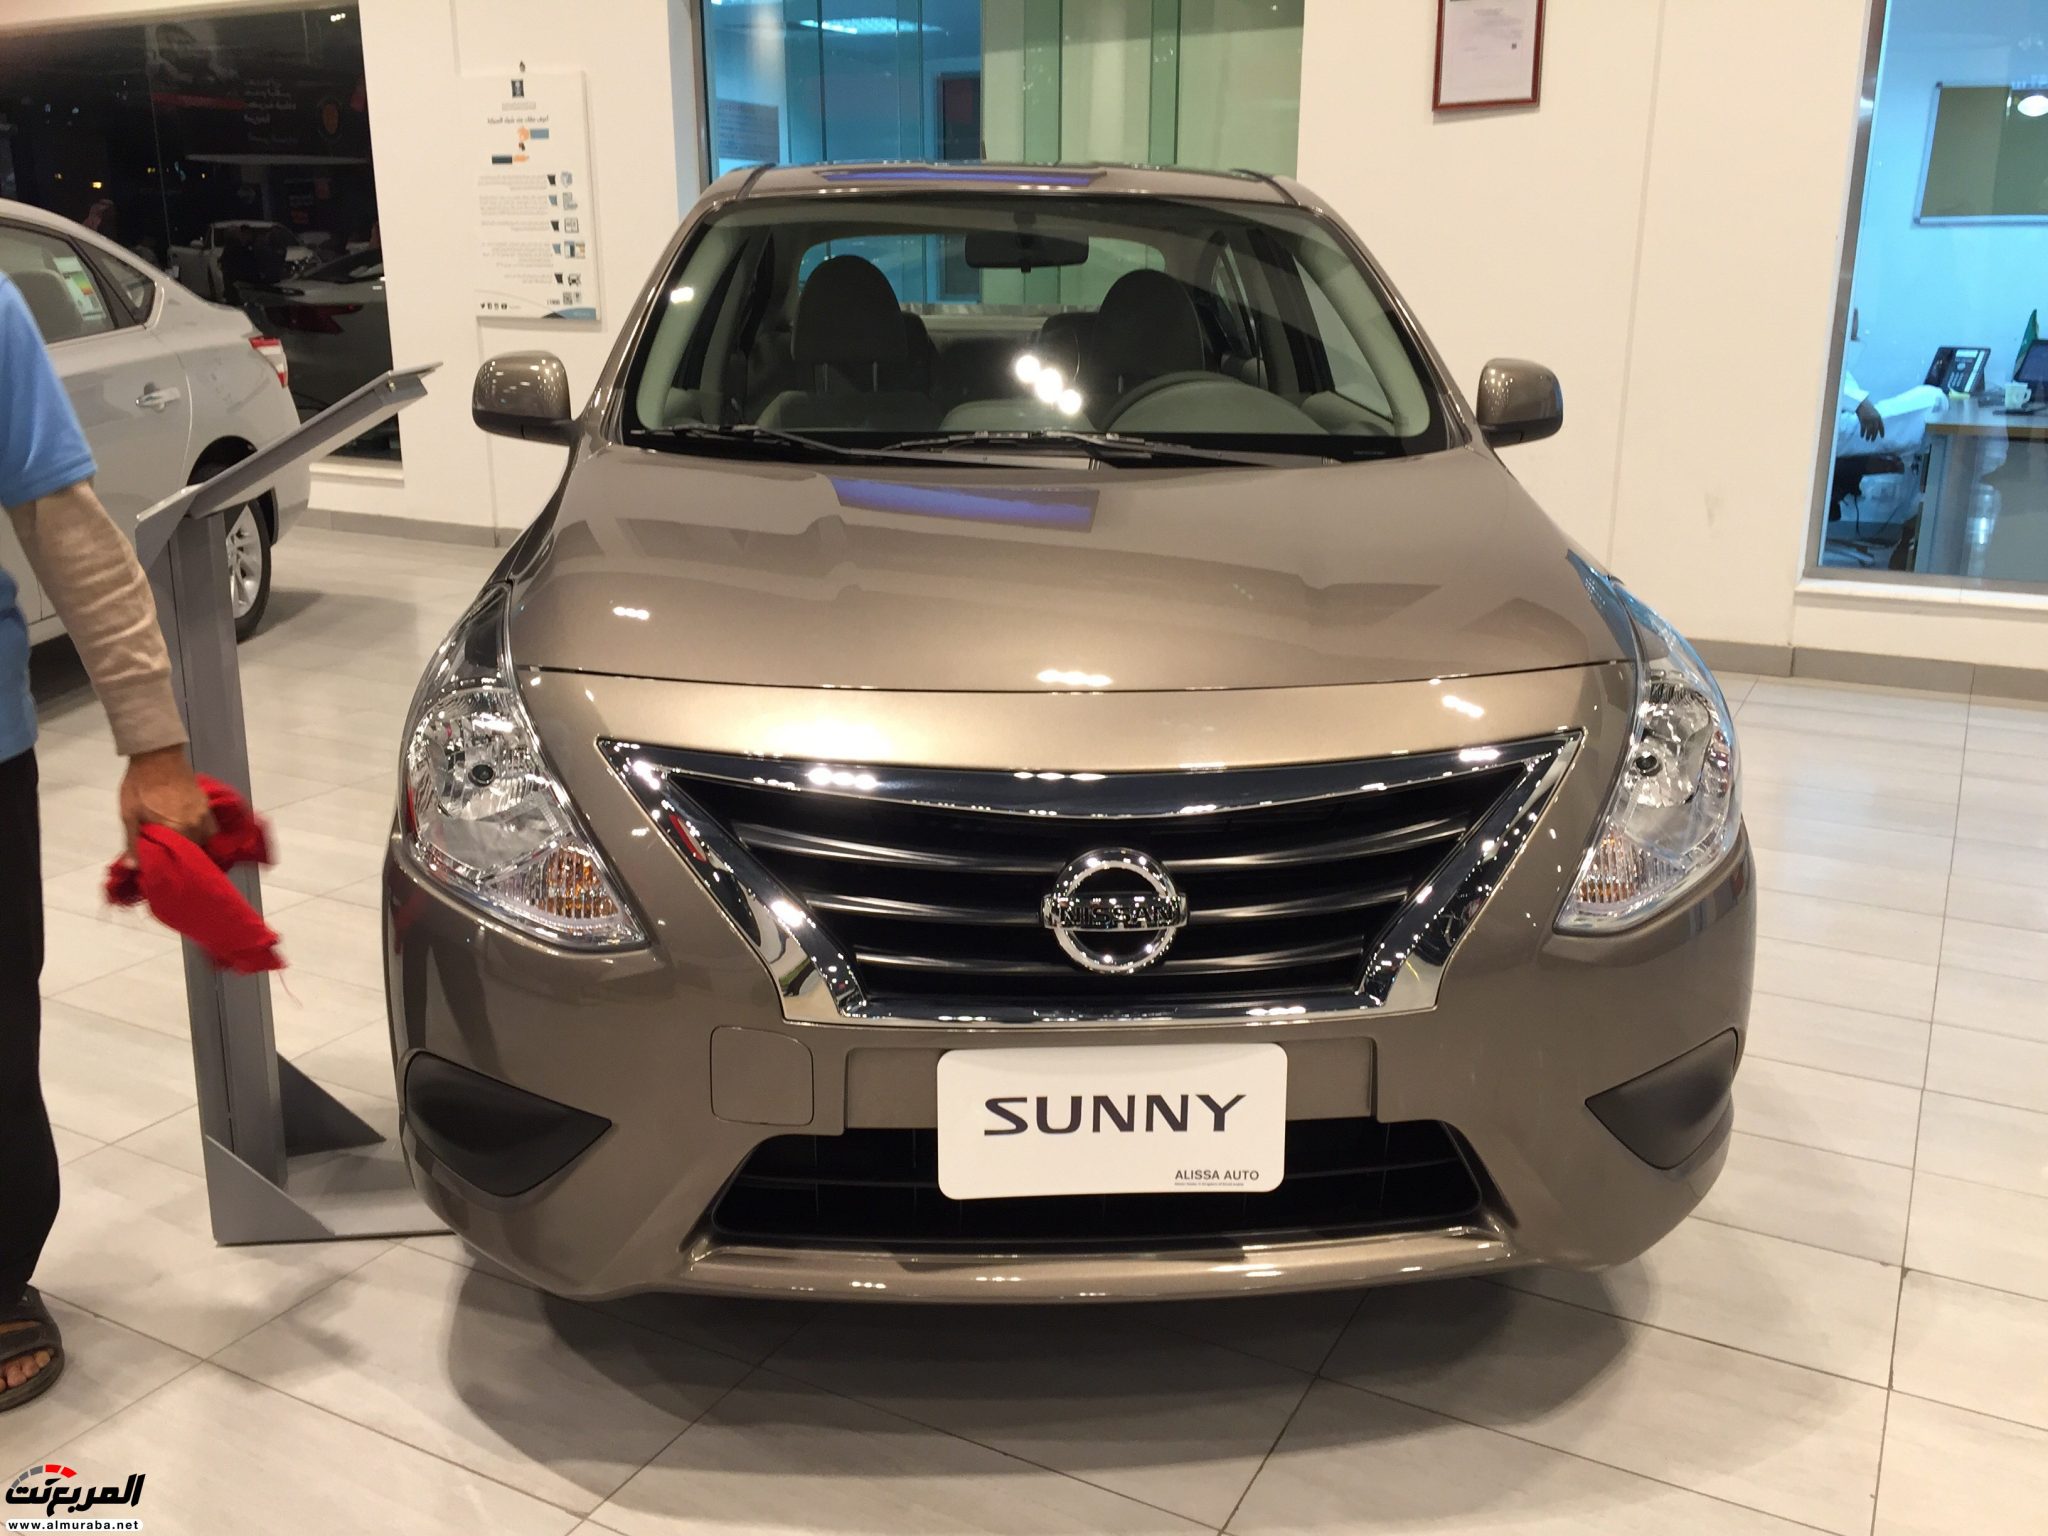 نيسان صني 2018 في السعودية لدى العيسى وبترومين + الاسعار والمواصفات لجميع الفئات Nissan Sunny 5